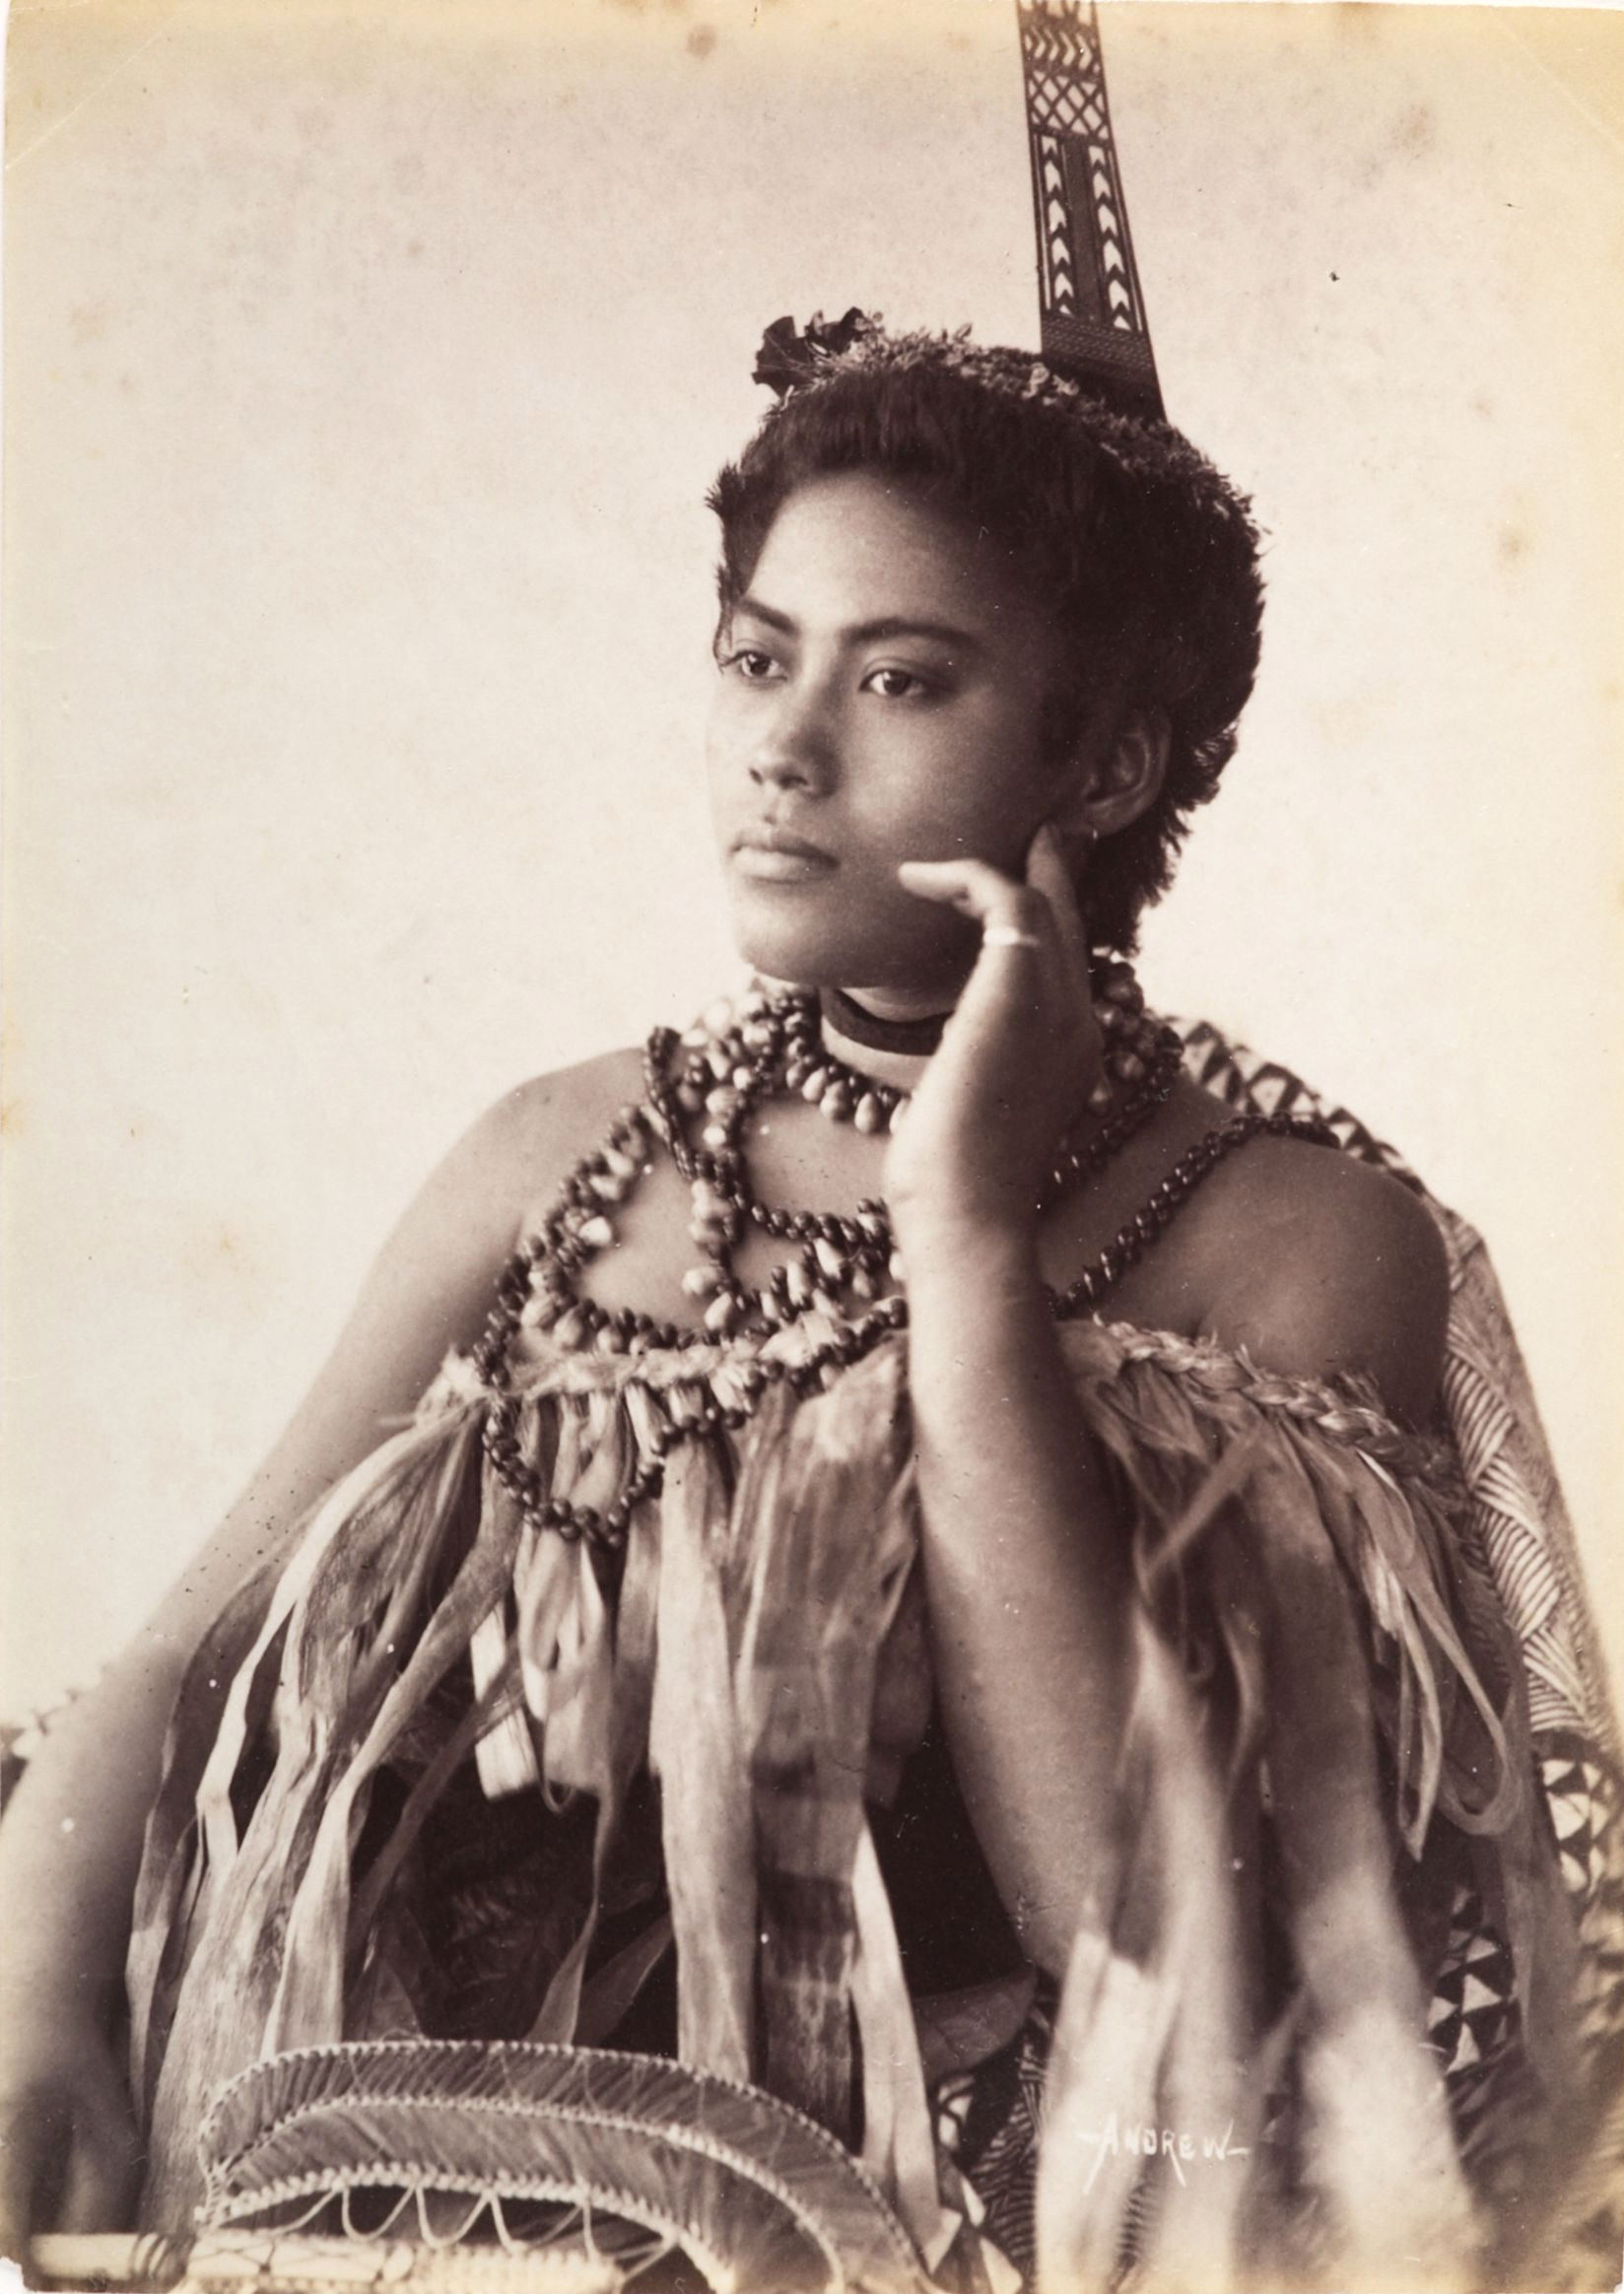 Thinking Woman, portrait of an unidentified Samoan woman wearing a cloak type garment